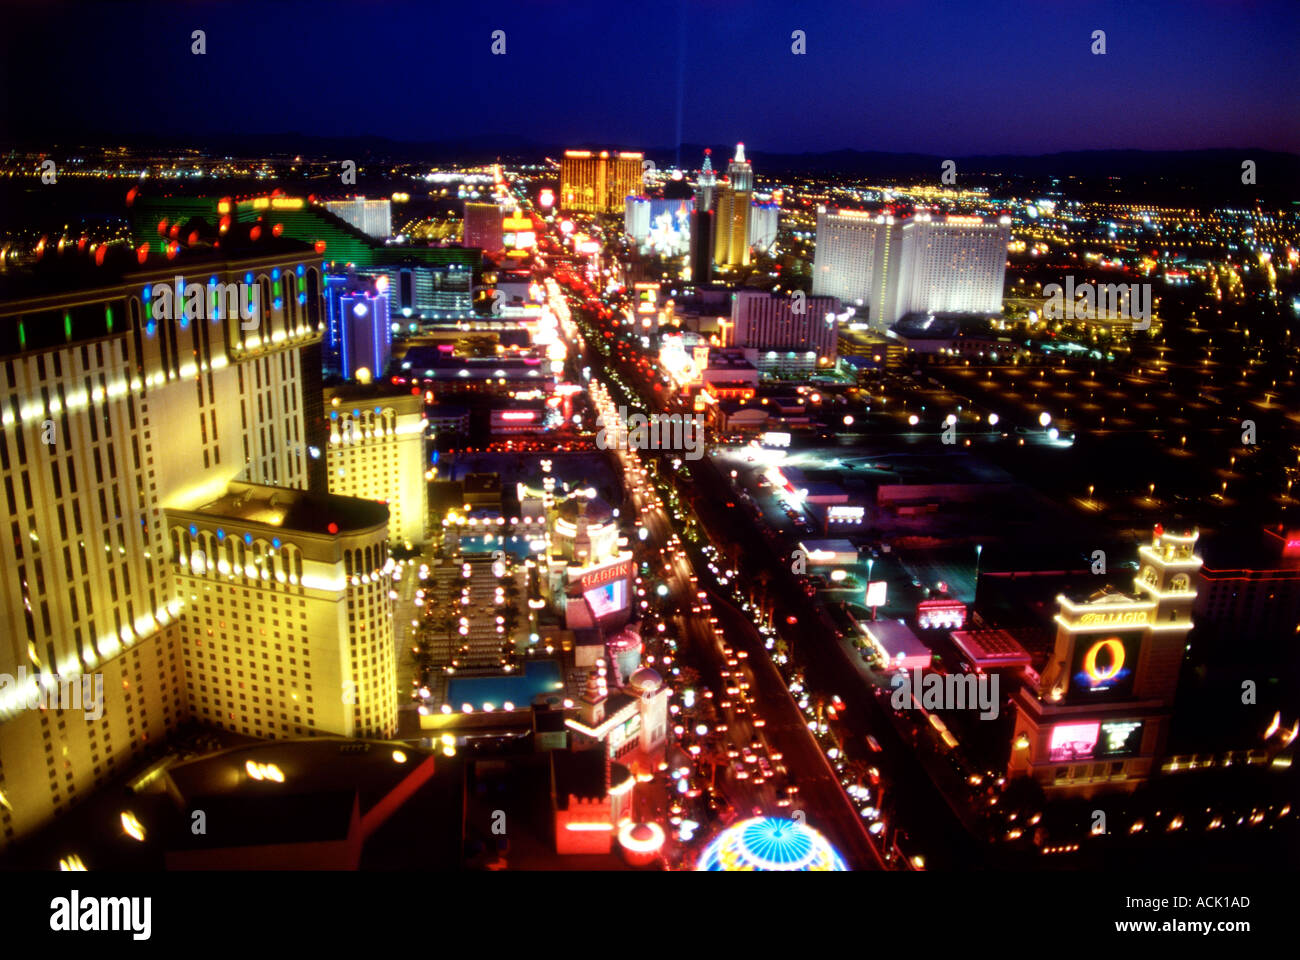 Las Vegas Nevada USA the Las Vegas strip at night Stock Photo